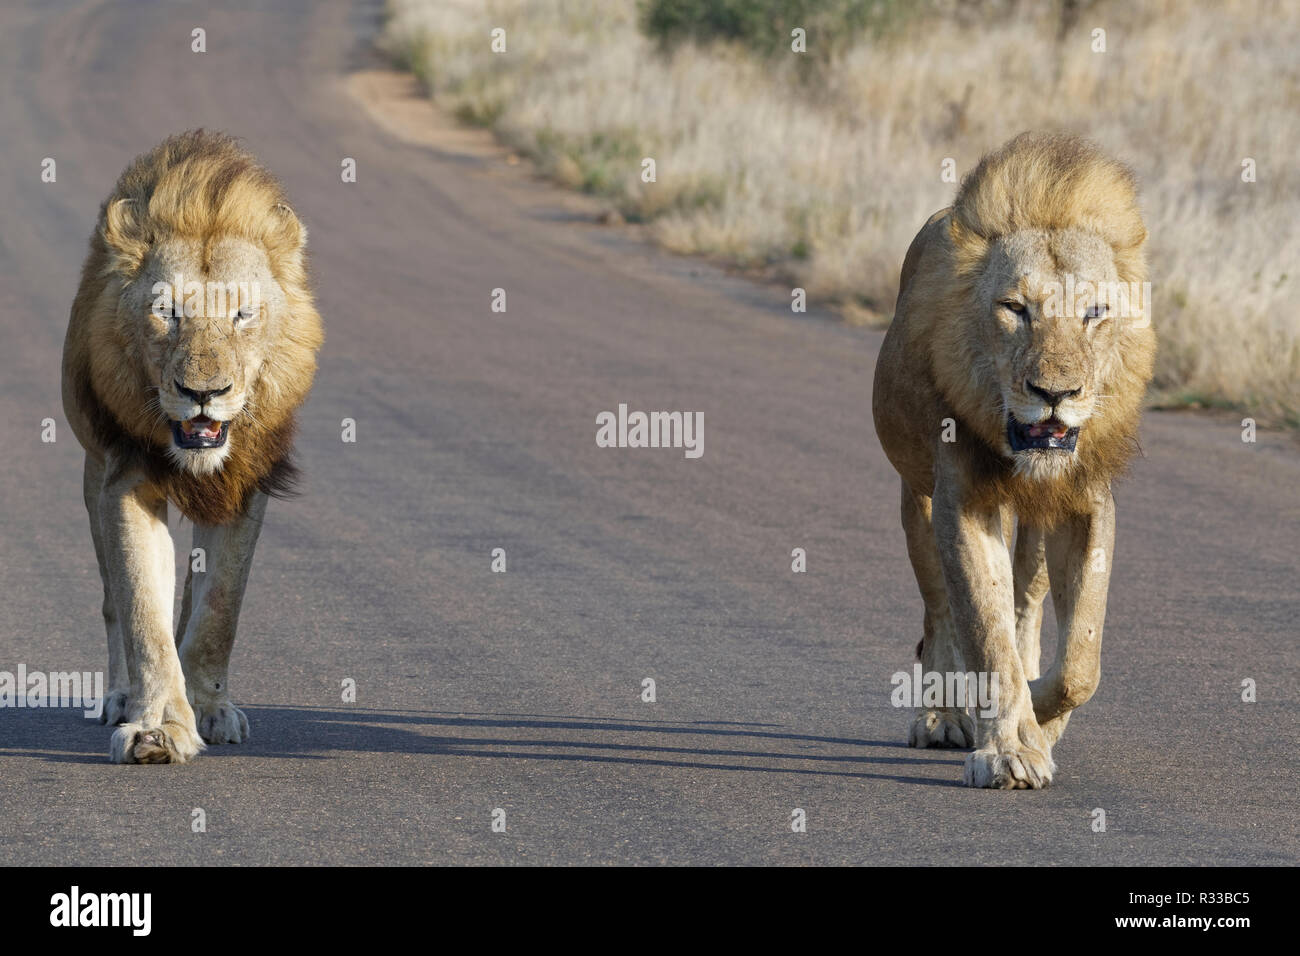 Afrikanische Löwen (Panthera leo), zwei erwachsenen Männchen, einer von ihnen halb blind, wandern Seite an Seite auf einer Teerstraße, Krüger Nationalpark, Südafrika Stockfoto